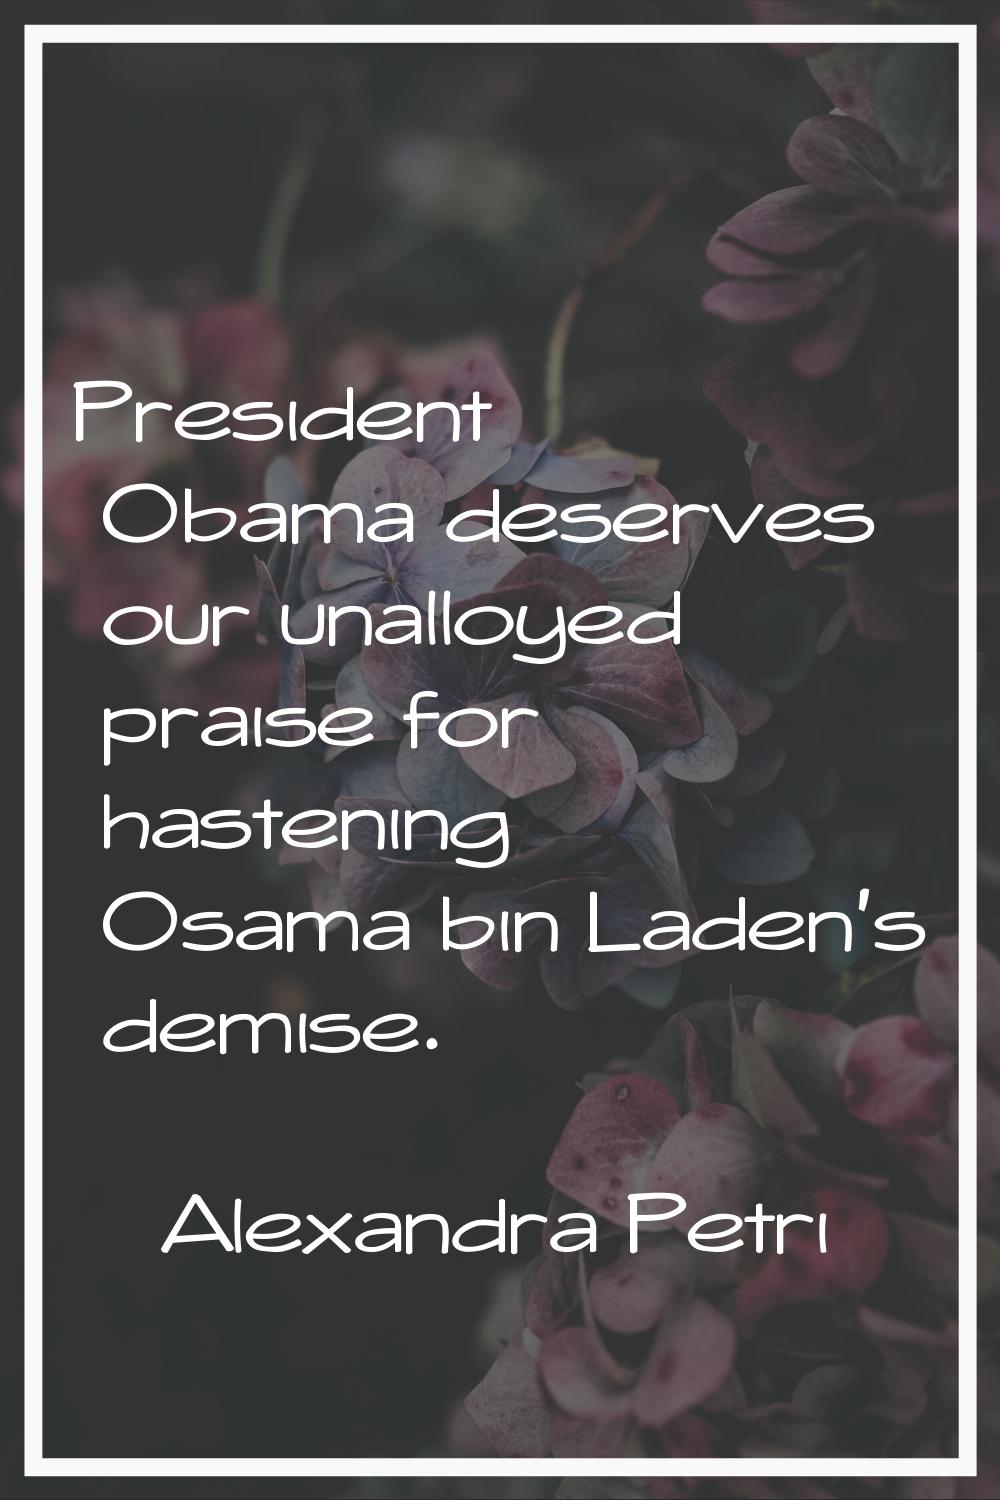 President Obama deserves our unalloyed praise for hastening Osama bin Laden's demise.